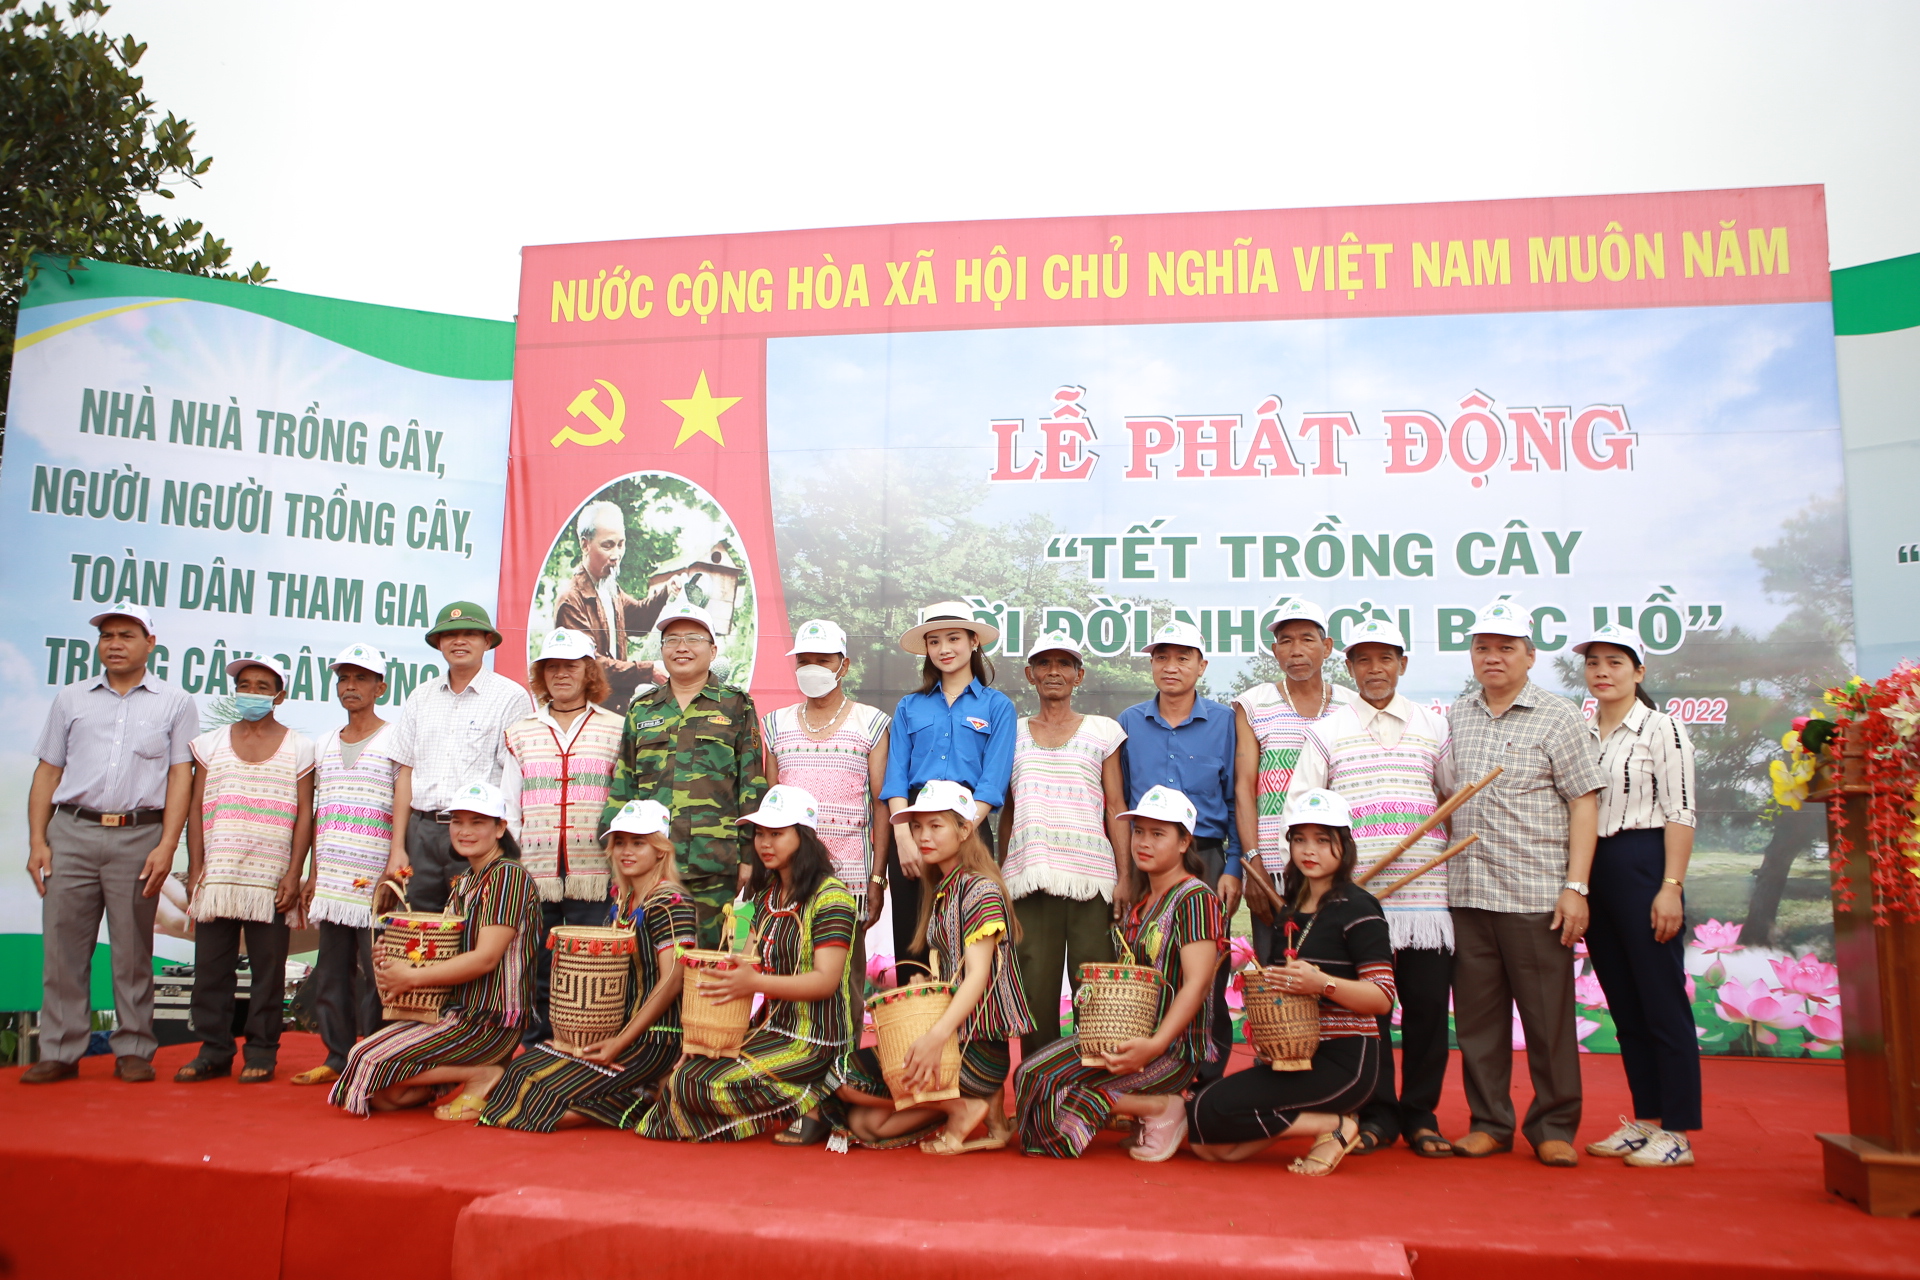 Á khôi Bùi Minh Anh chụp ảnh lưu niệm cùng bà con sau khi tham gia cuốc đất, trồng cây tại Đắk Nông